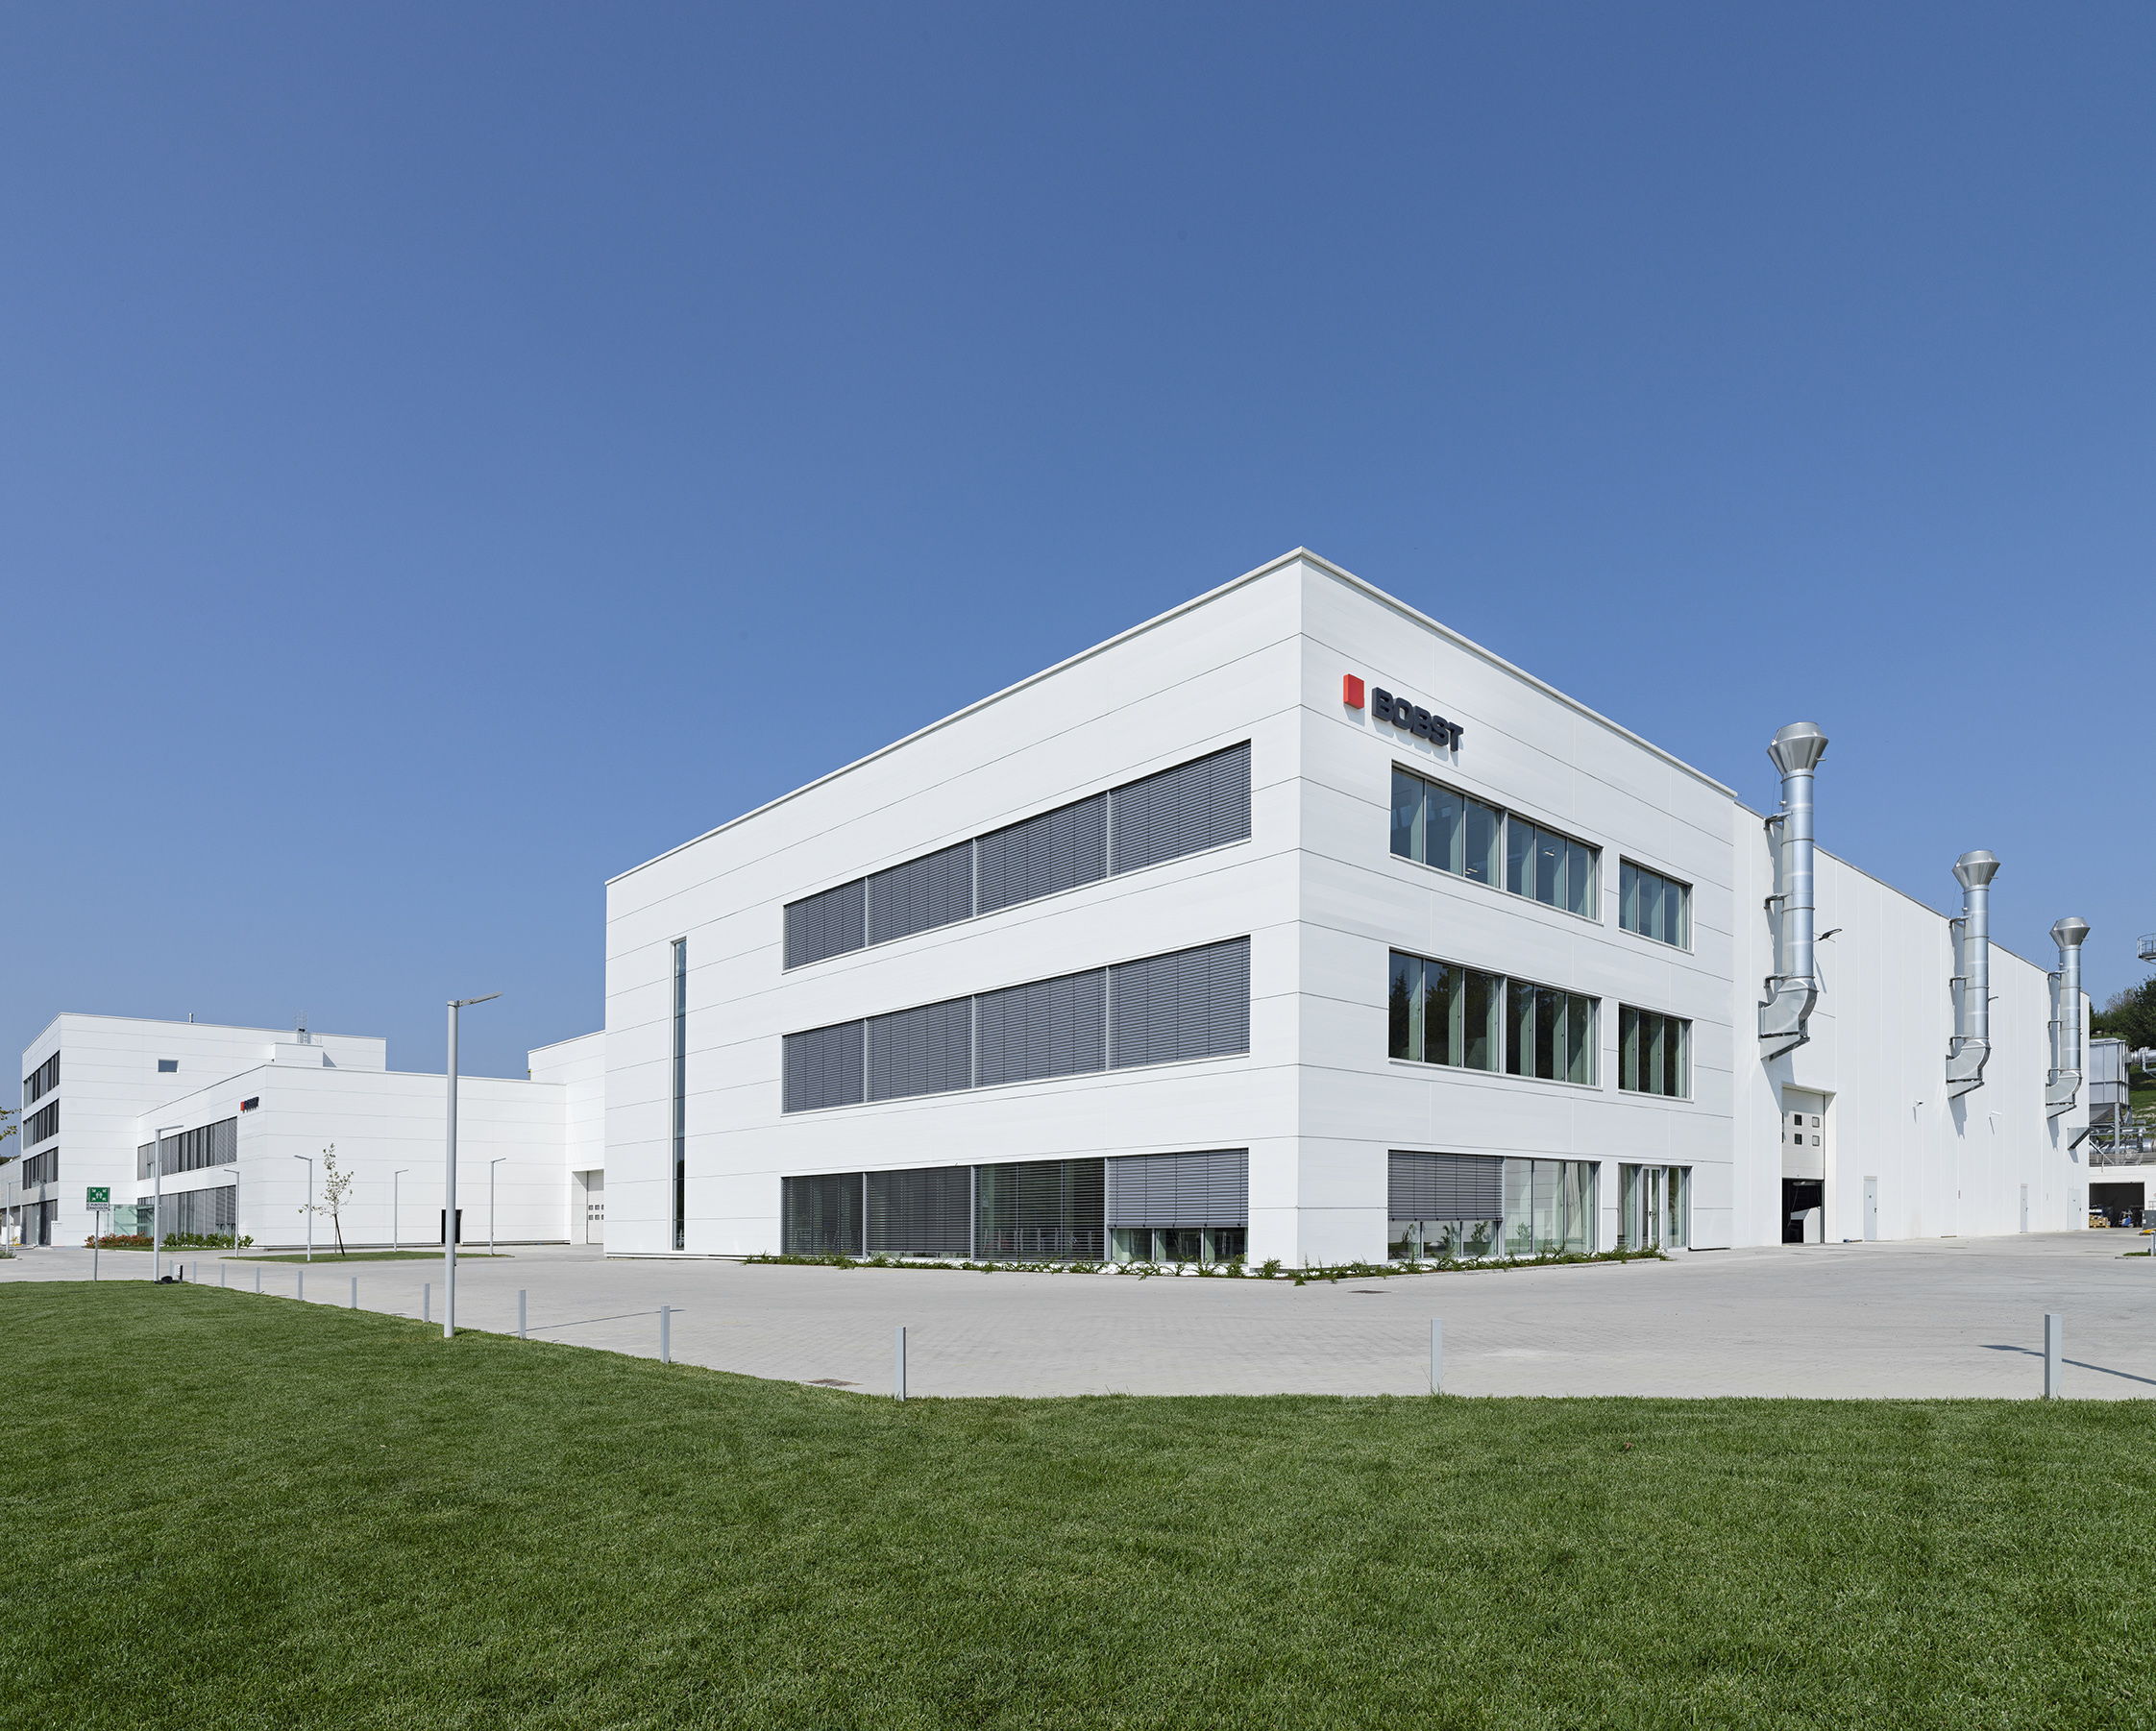 软包装技能演示中心设施位于意大利圣乔治蒙费拉托，毗邻博斯特意大利生产工厂